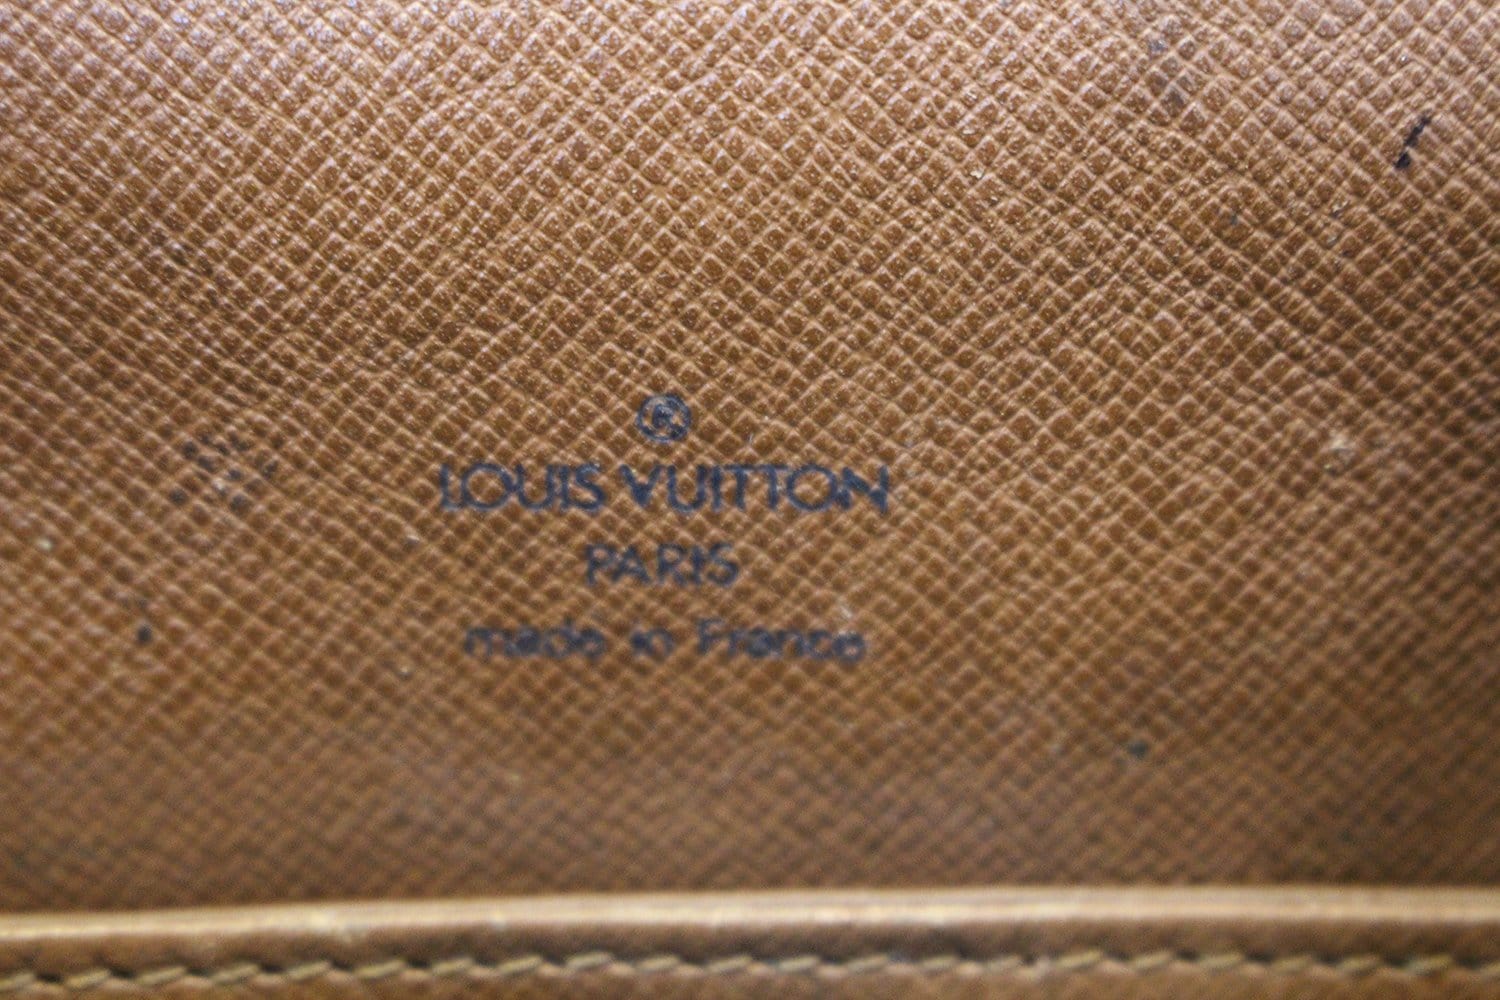 Spot new celine bags: Louis Vuitton Monogram Canvas Santa Monica M50511